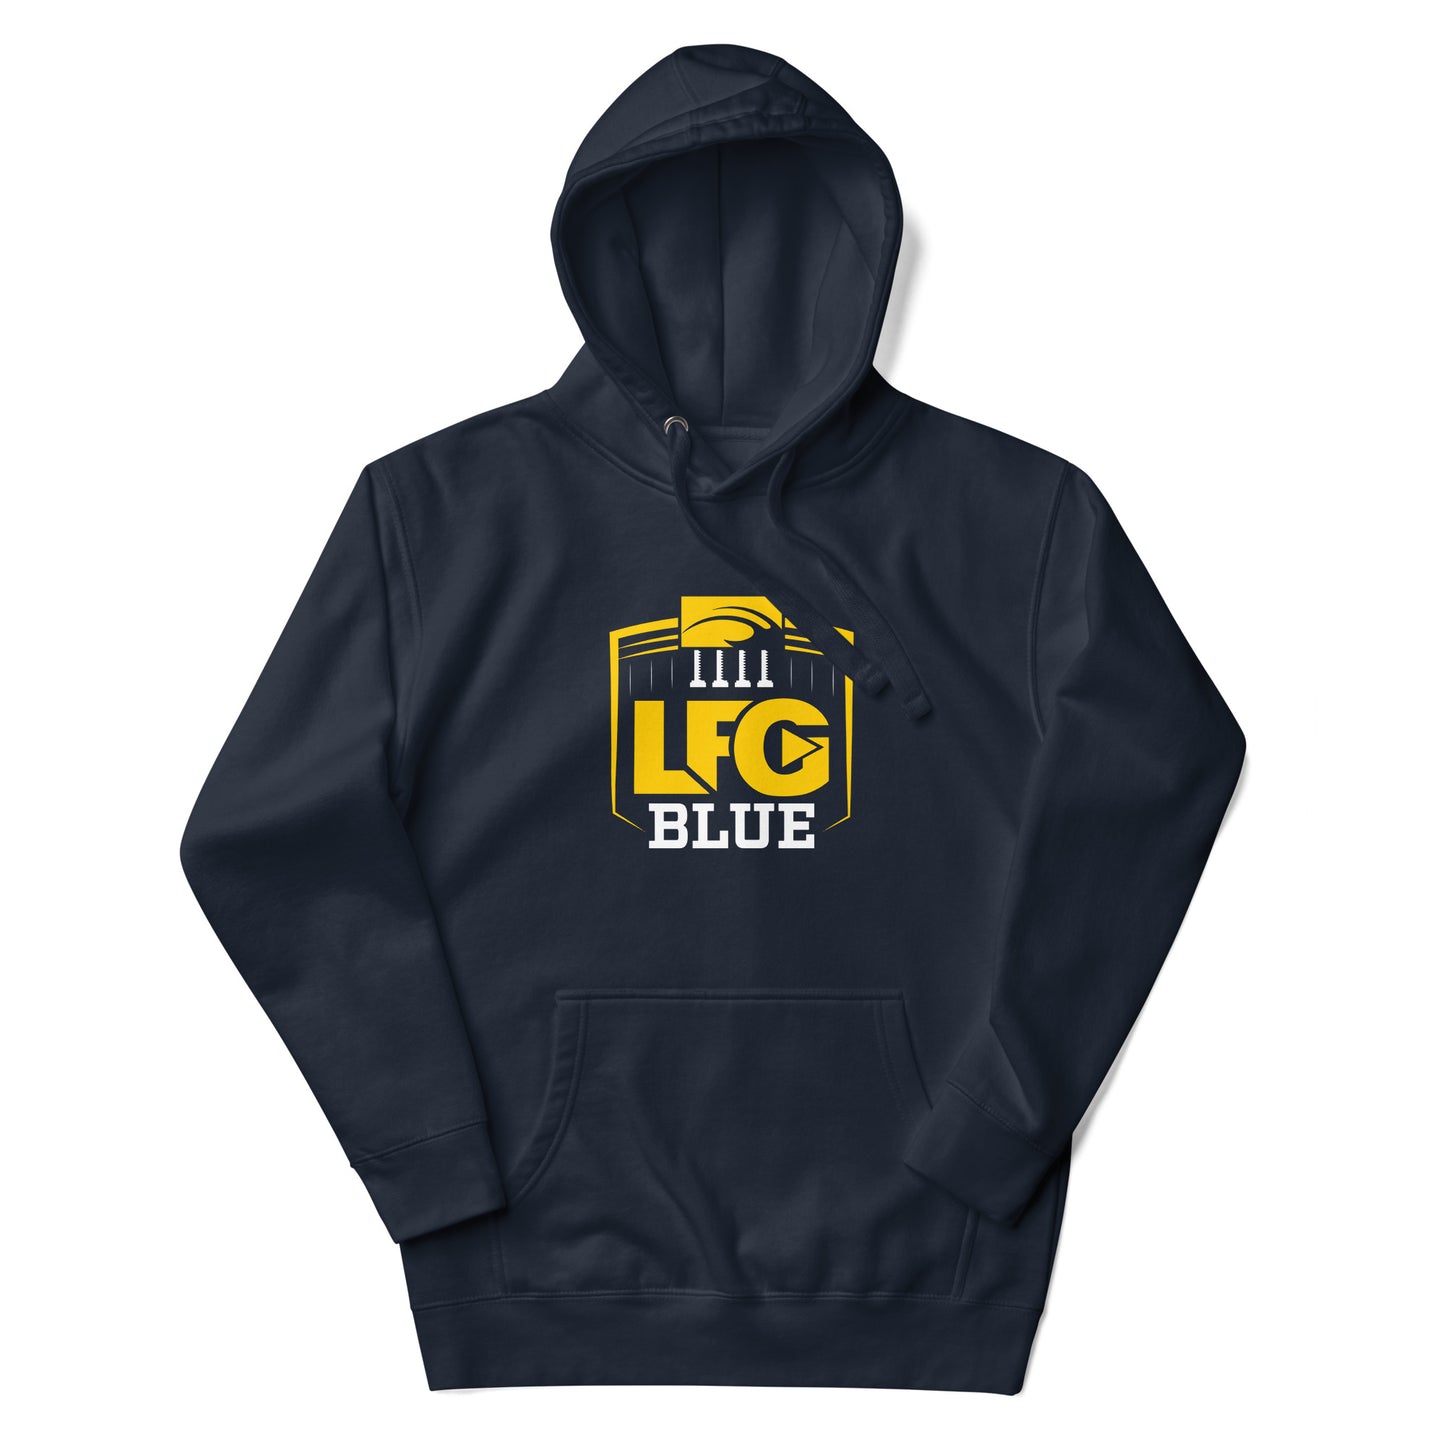 LFG Blue hoodie